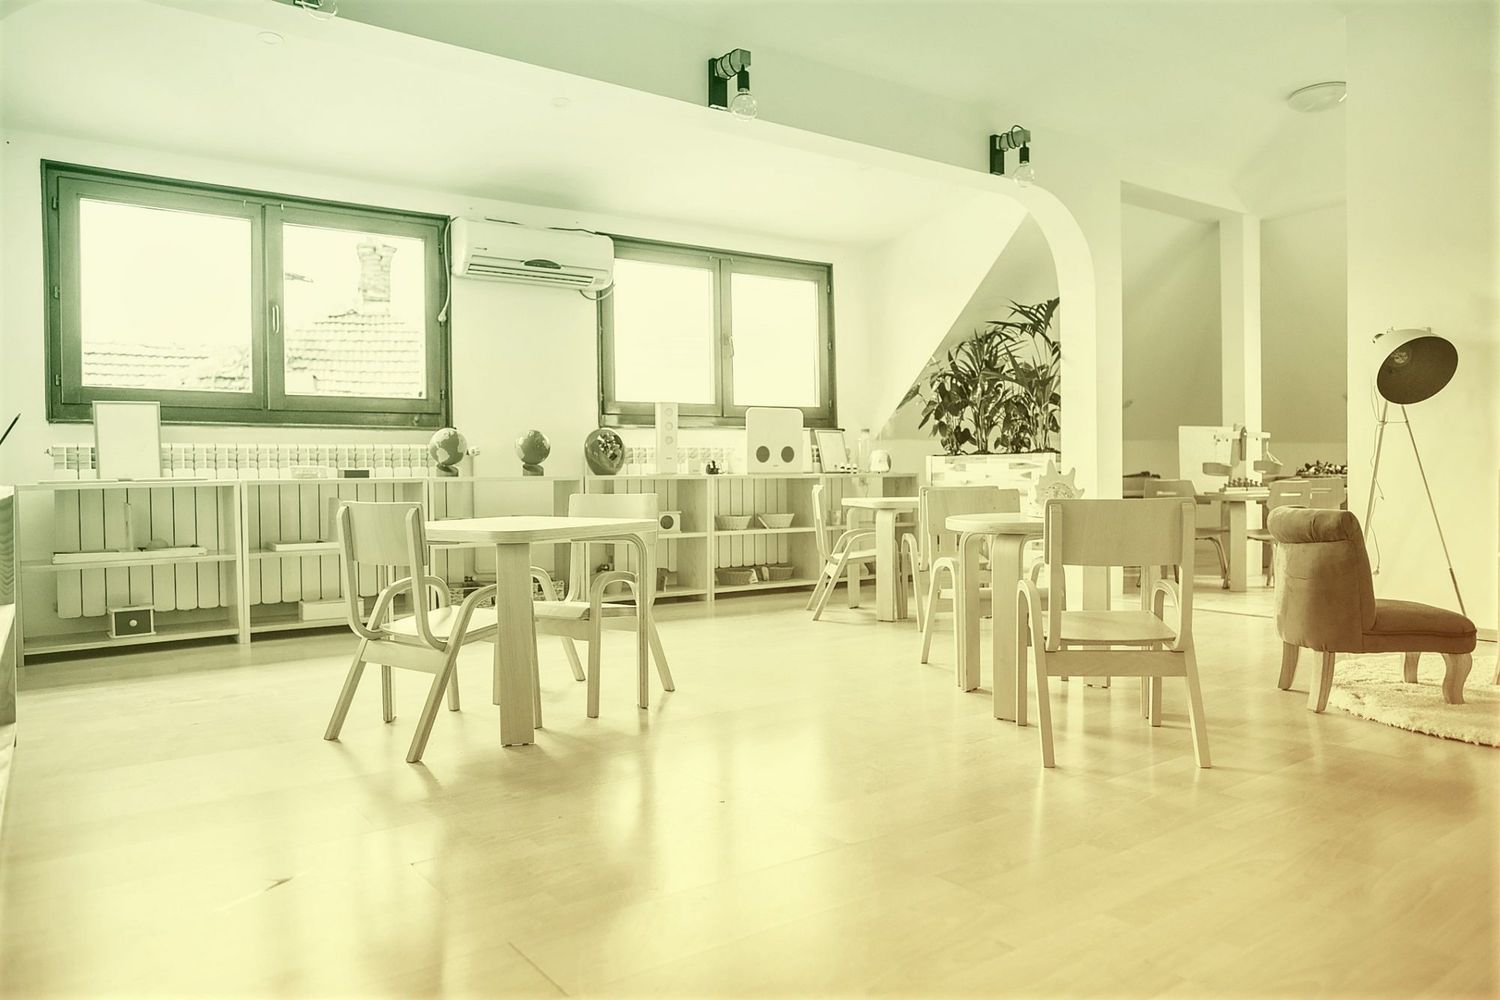 interior design of kindergarten classroom